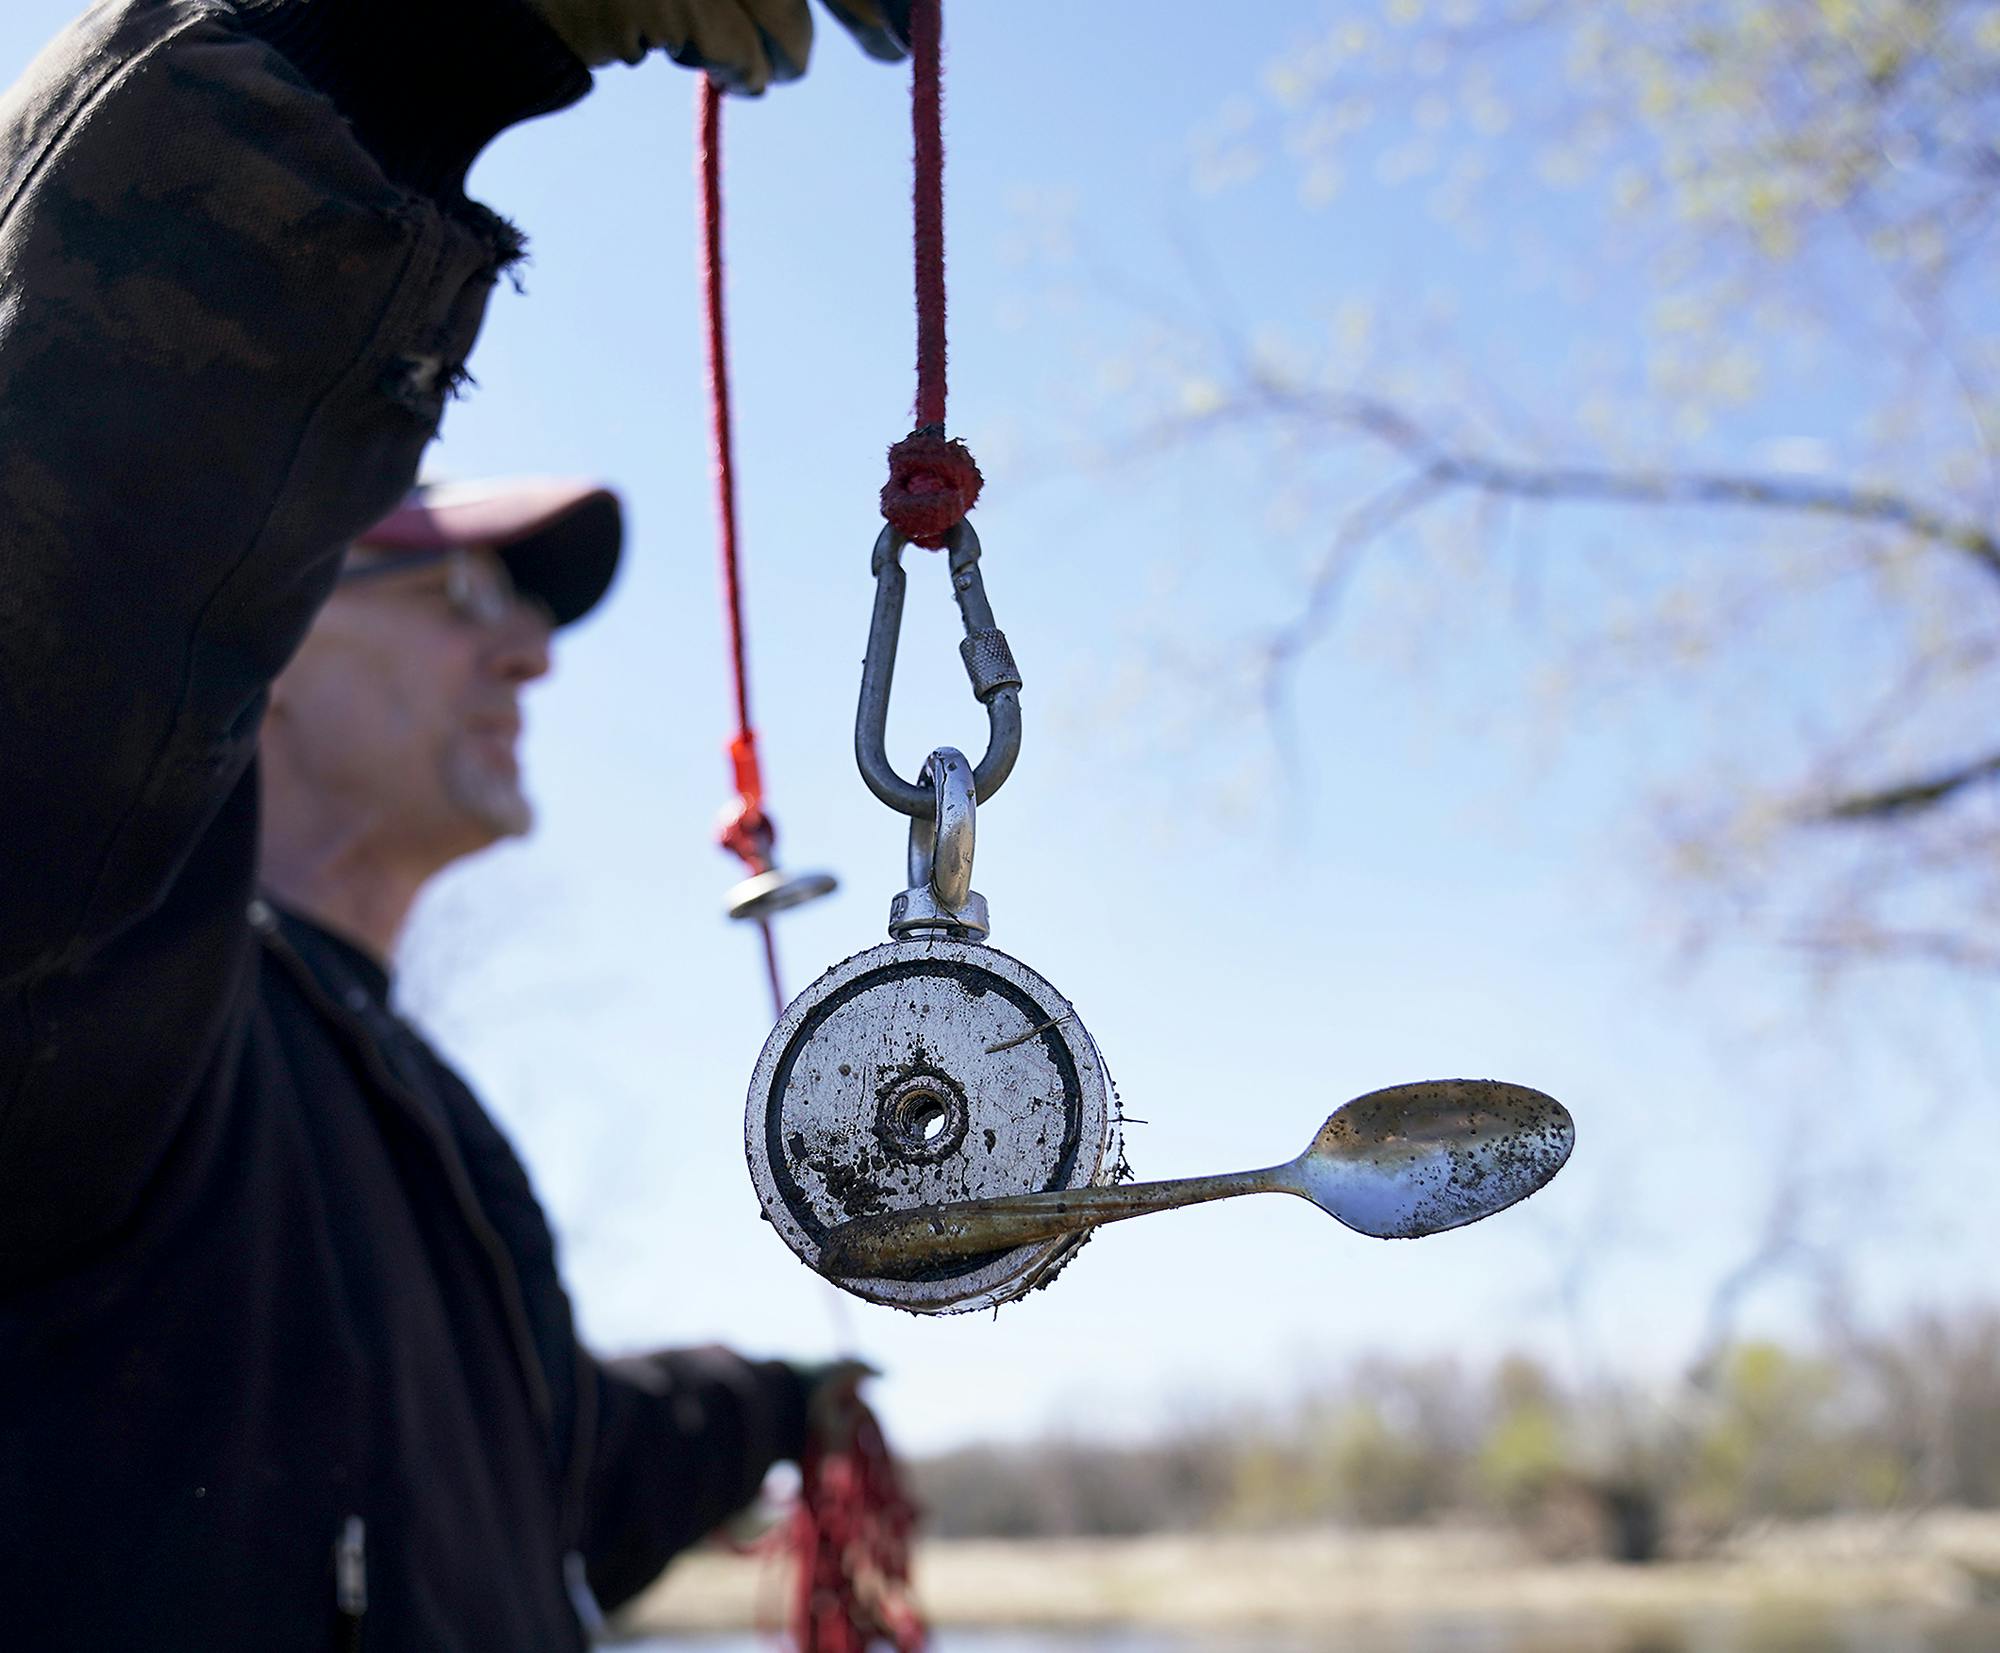 First time Magnet Fishing, Sylvan Lake-South Dakota : r/magnetfishing